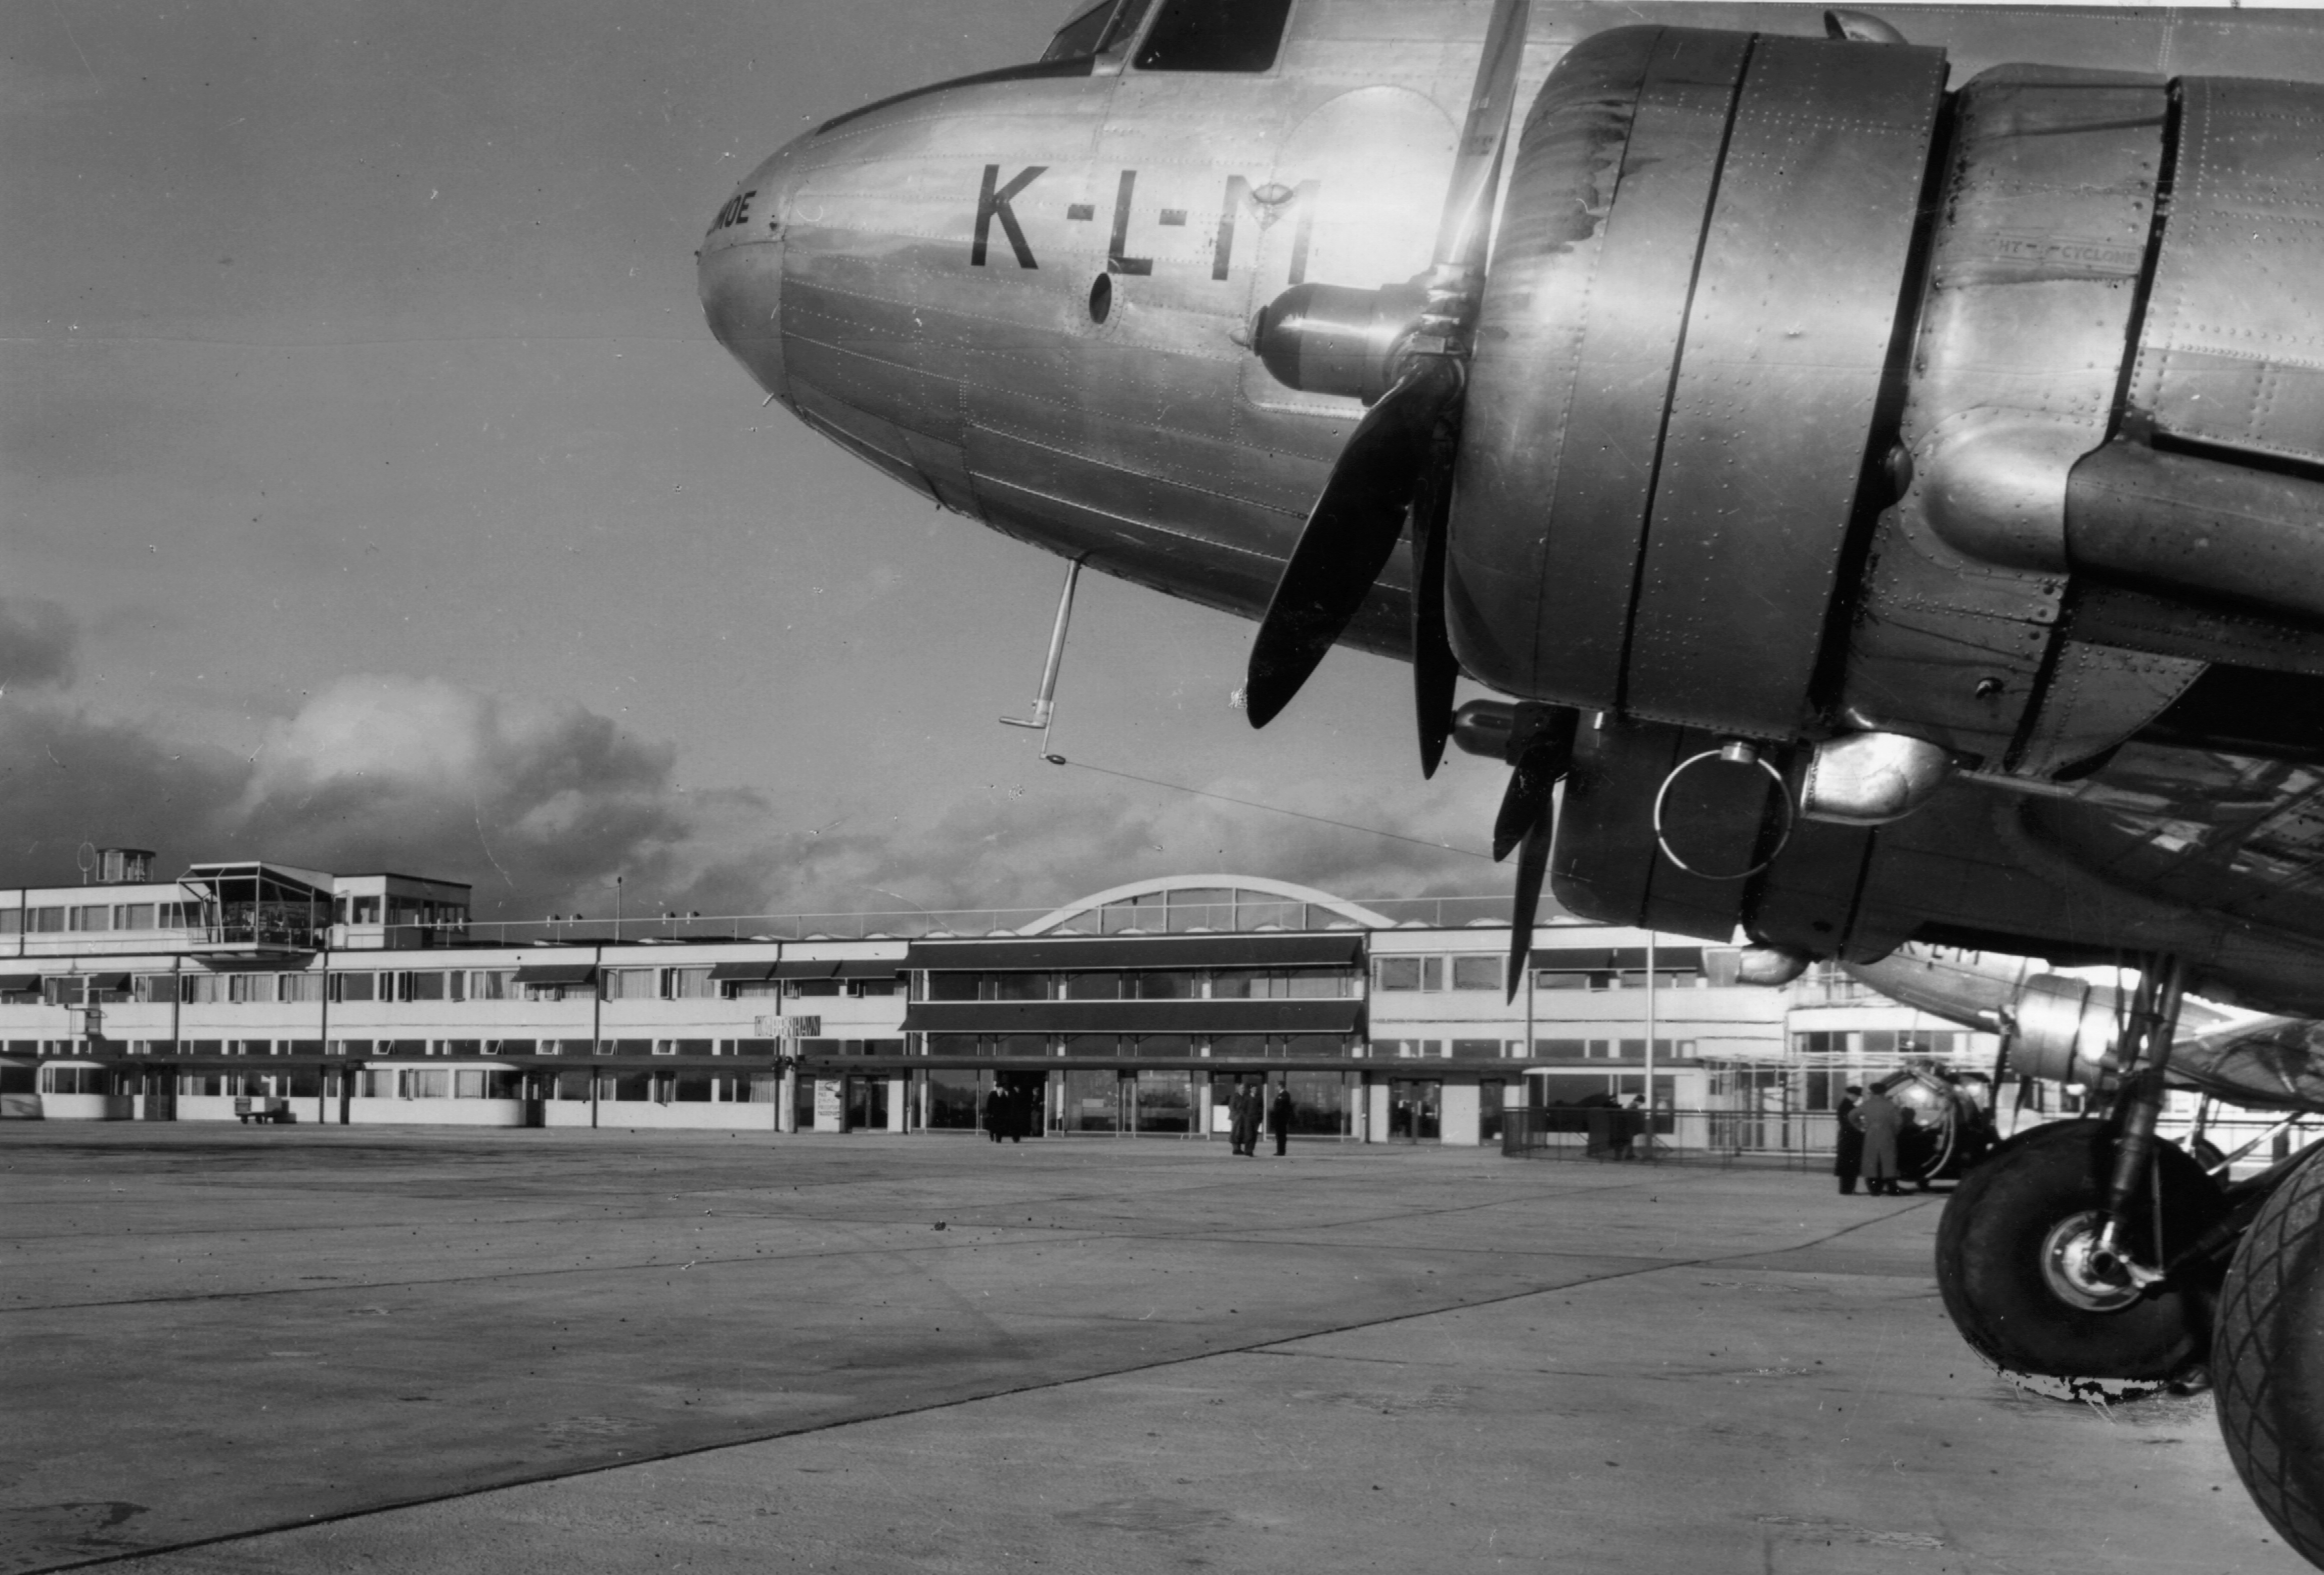 Gammelt fotografi af Vilhelm Lauritzen Terminalen med et KLM fly i forgrunden